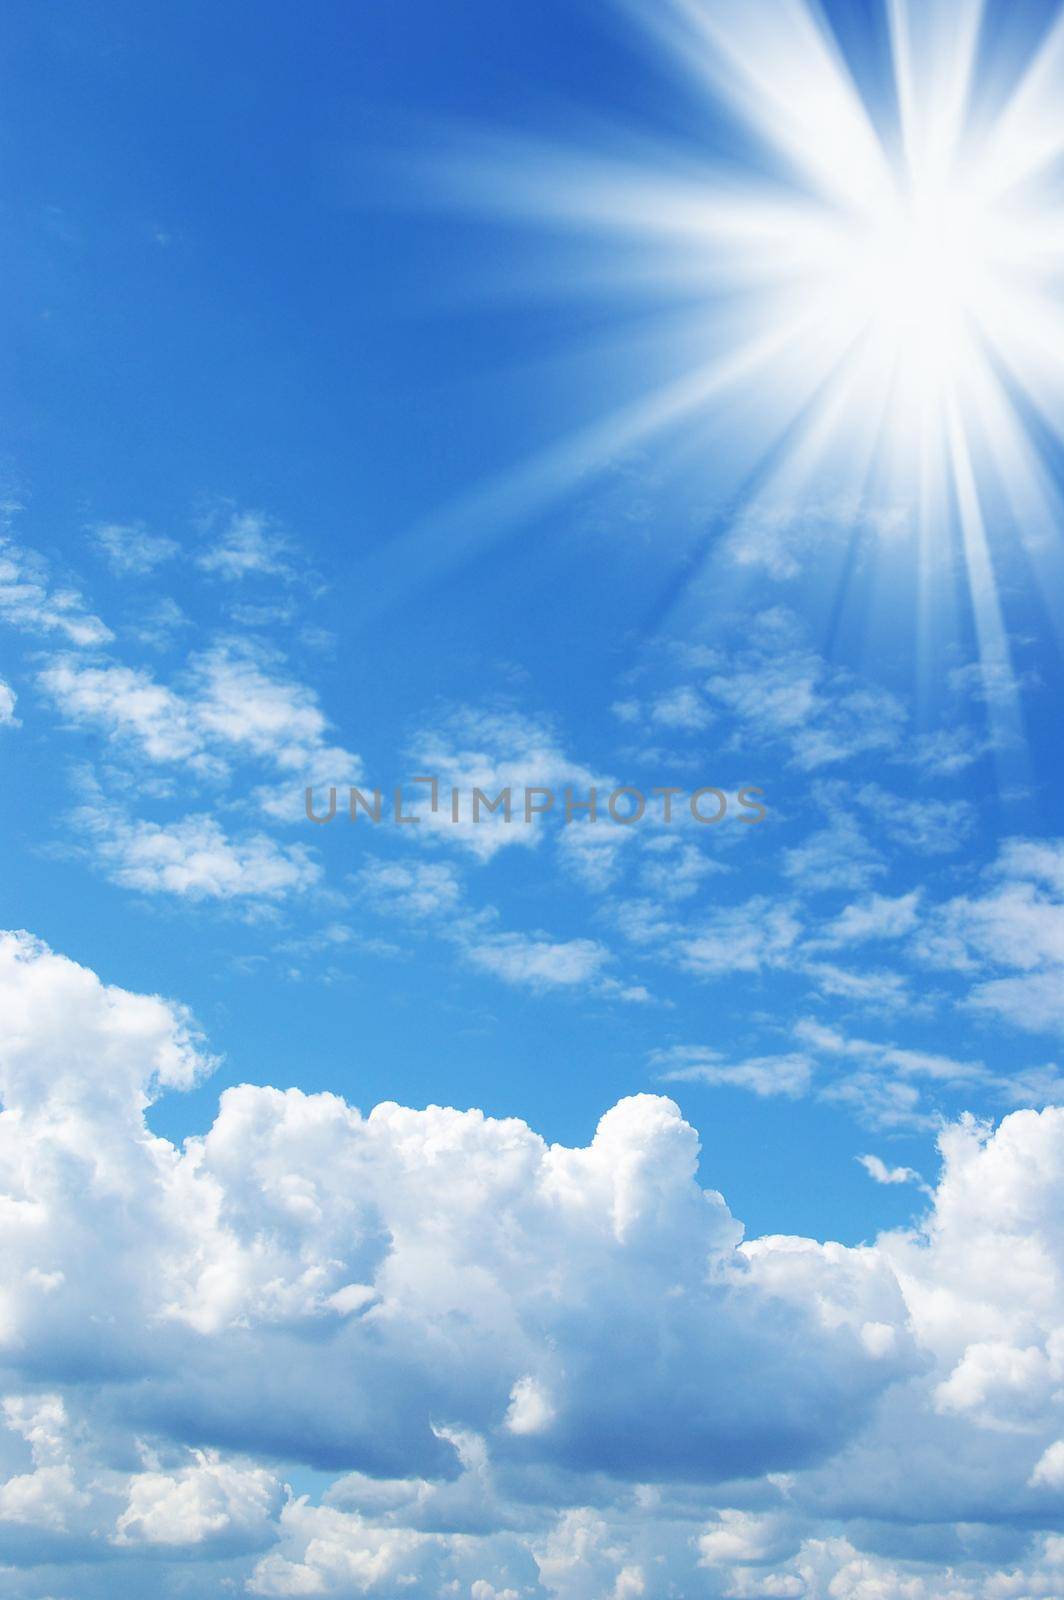 Sun in a blue sky by tan4ikk1